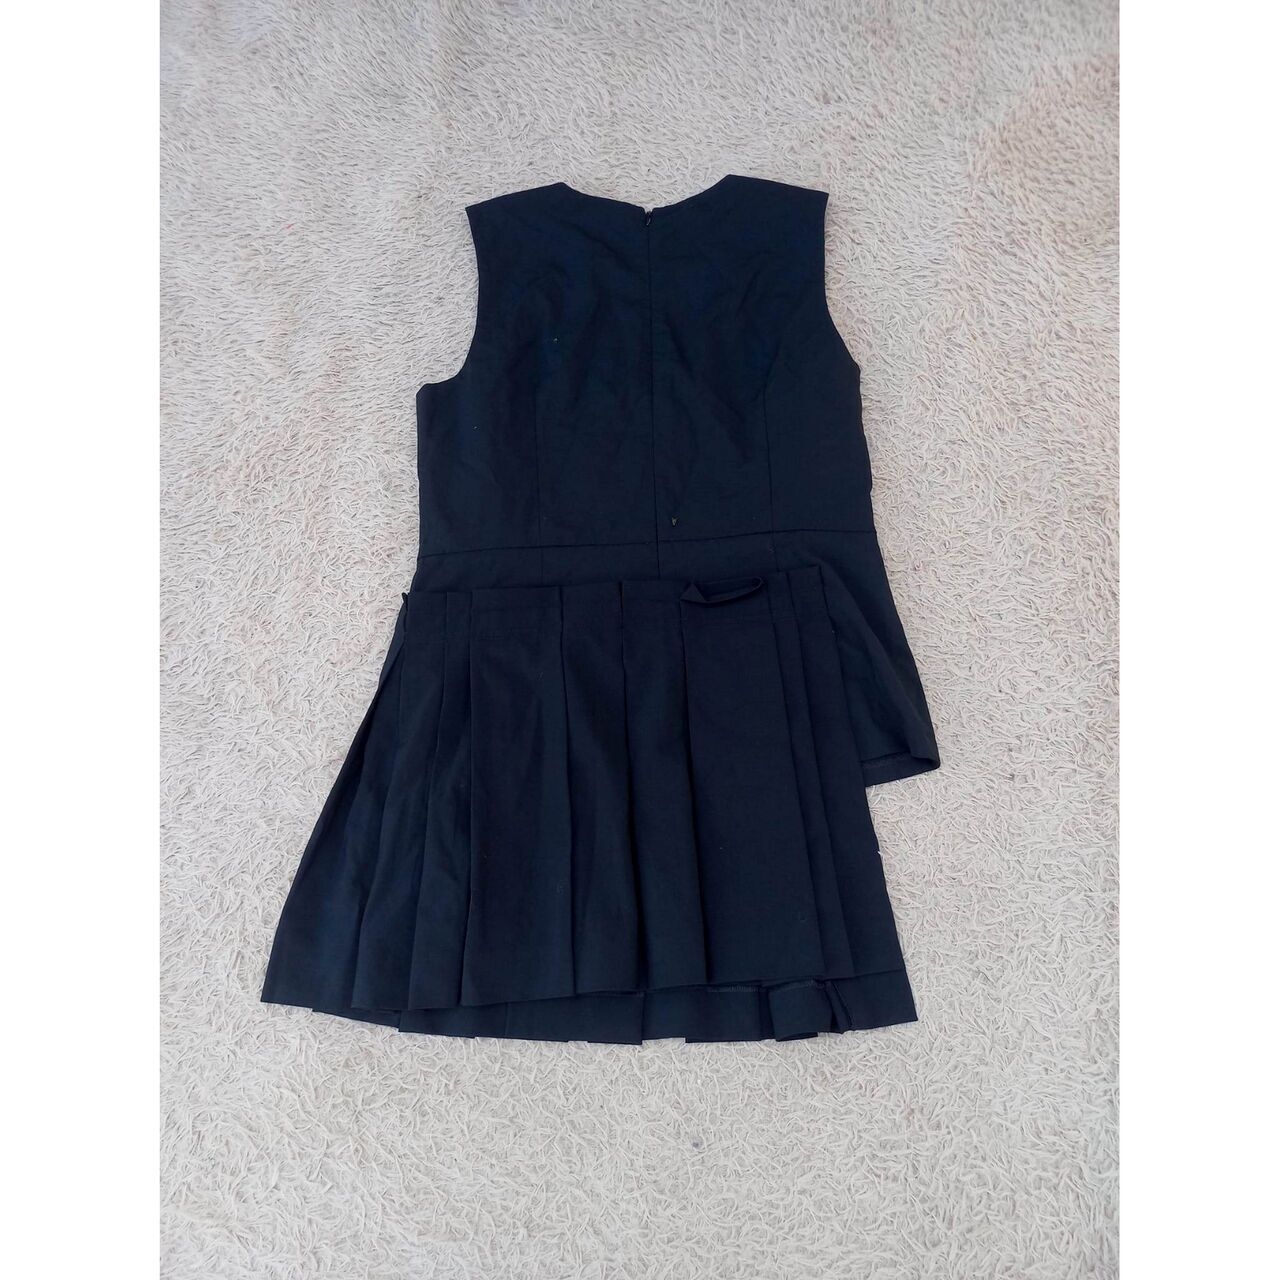 Dkny Pleated Black Mini Dress